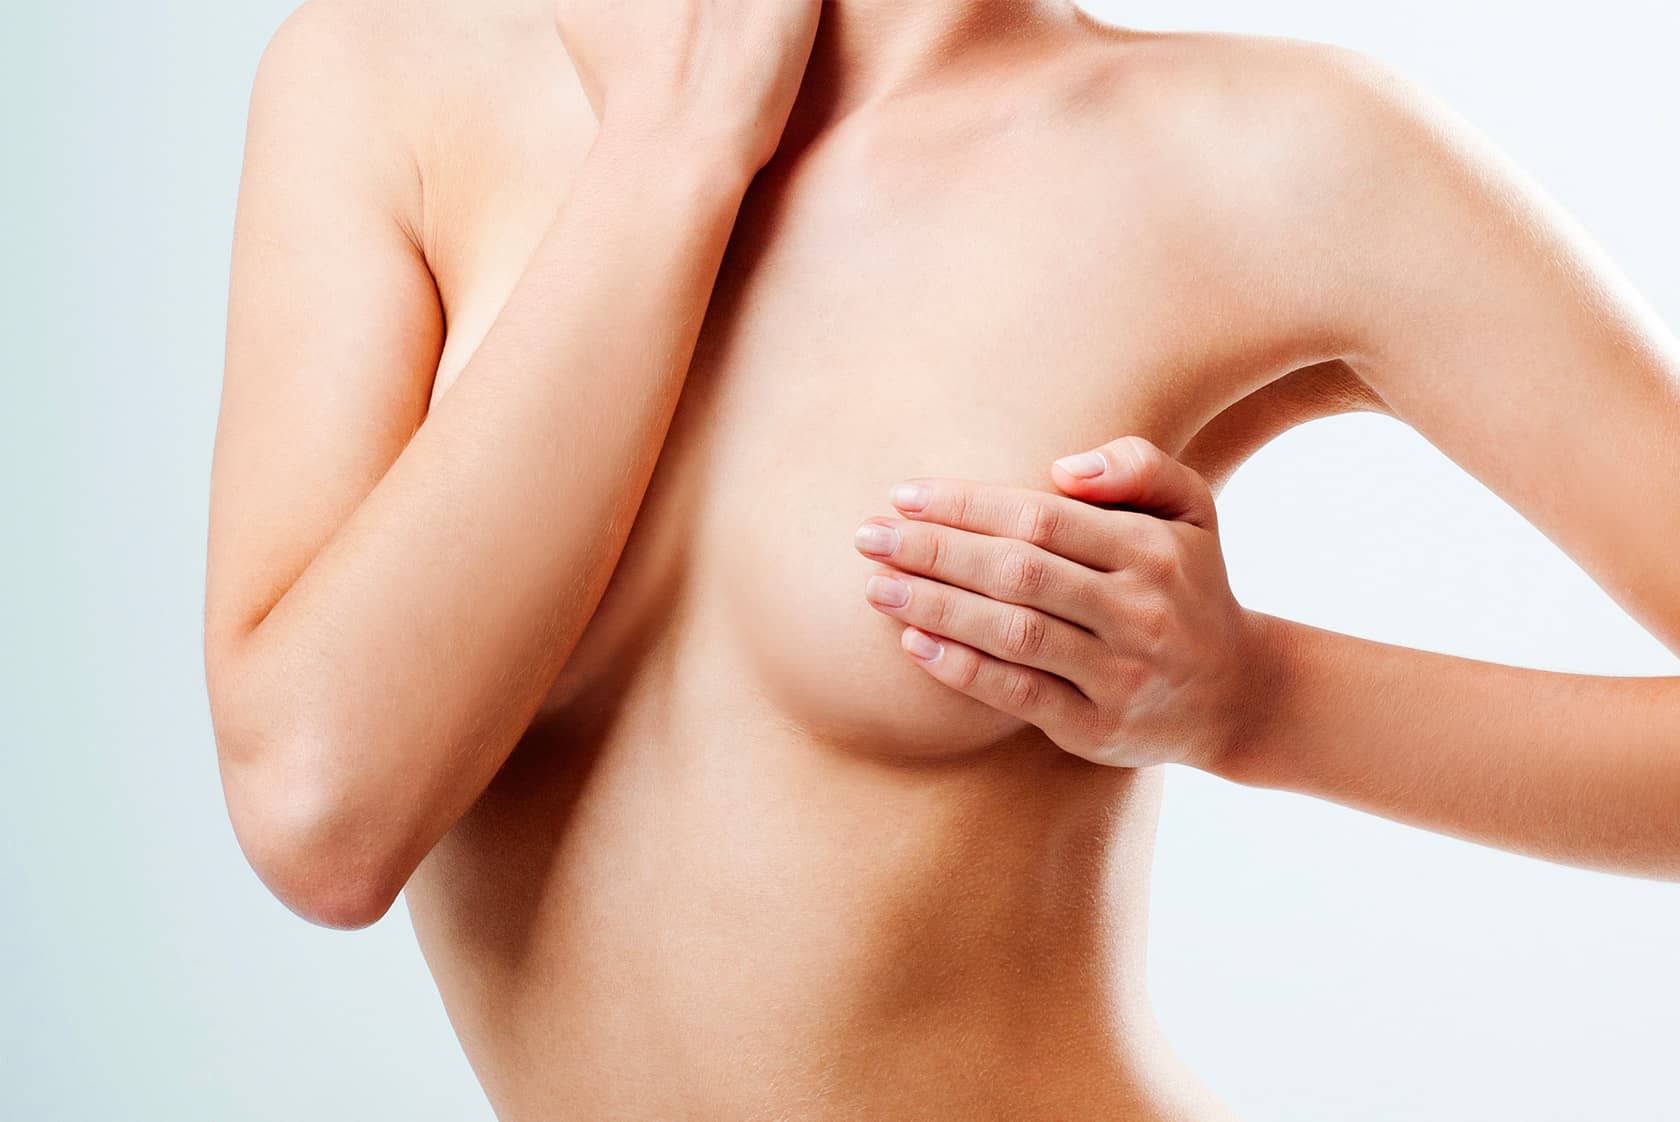 Le moment idéal pour envisager une reconstruction mammaire | Dr Sarfati